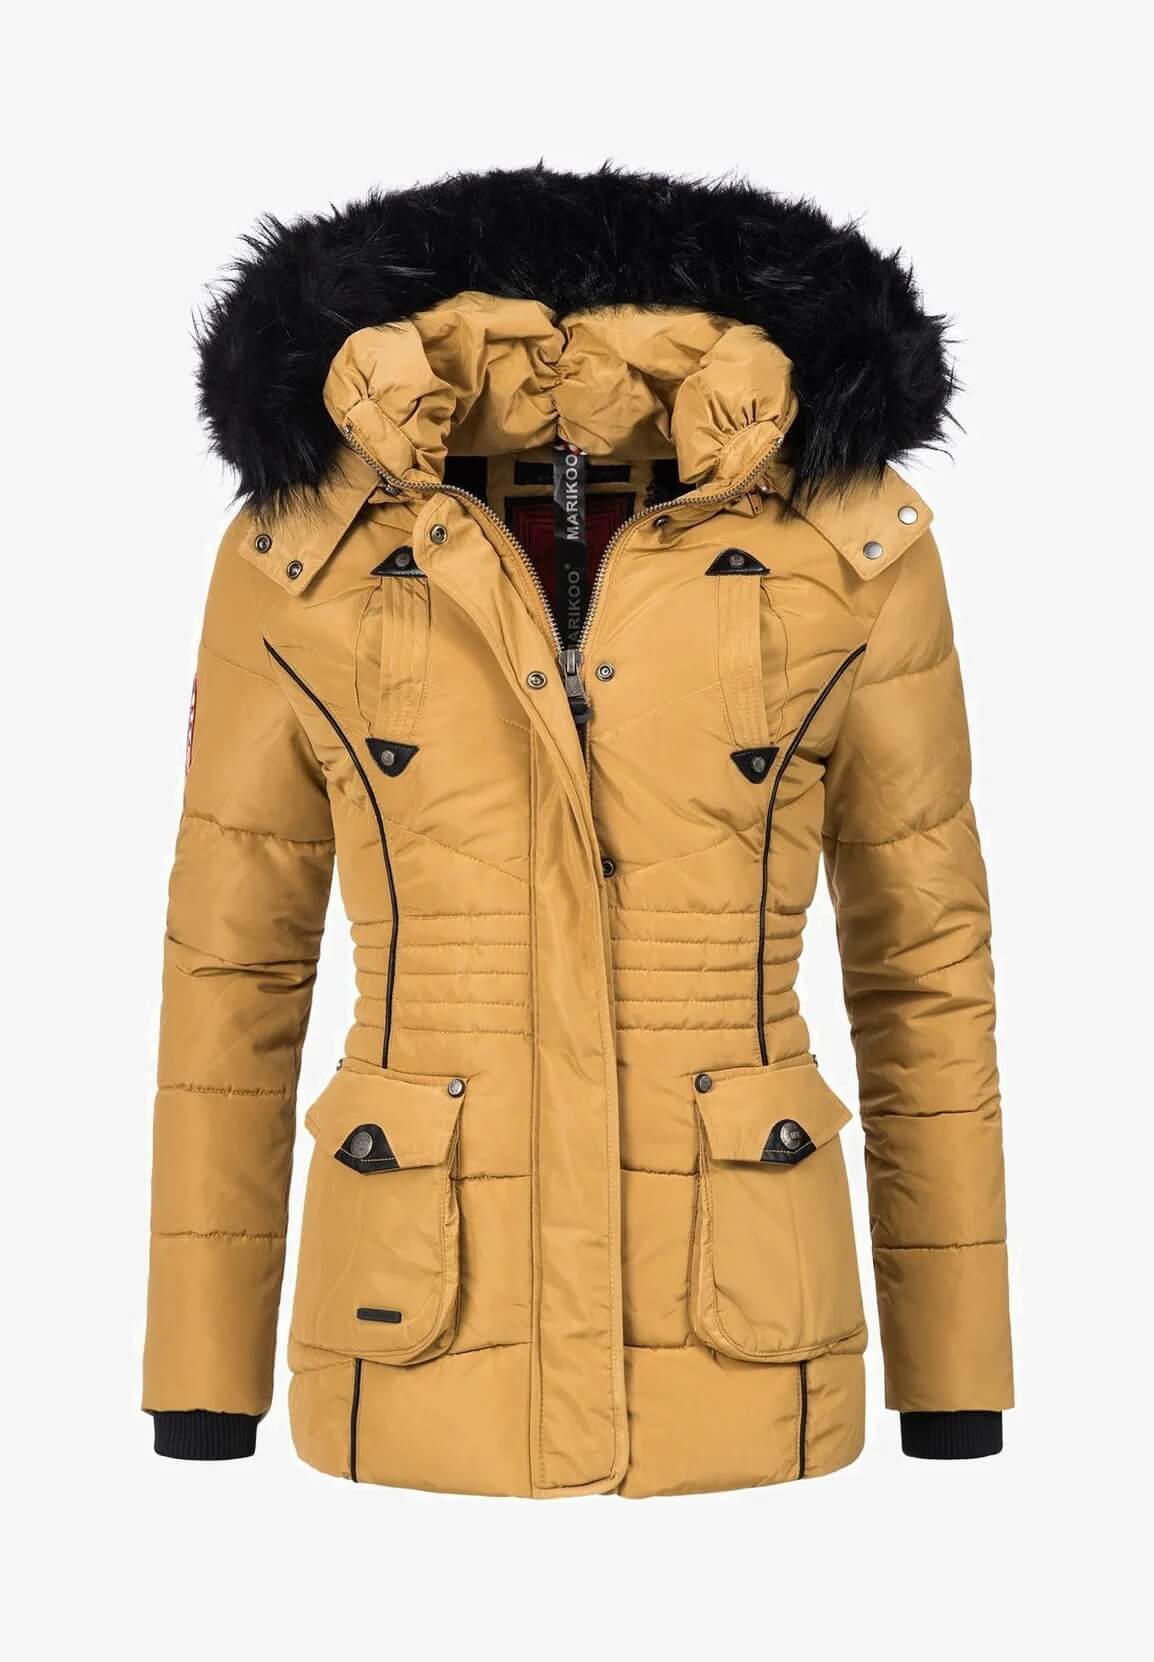 Trendy women's winter jacket A